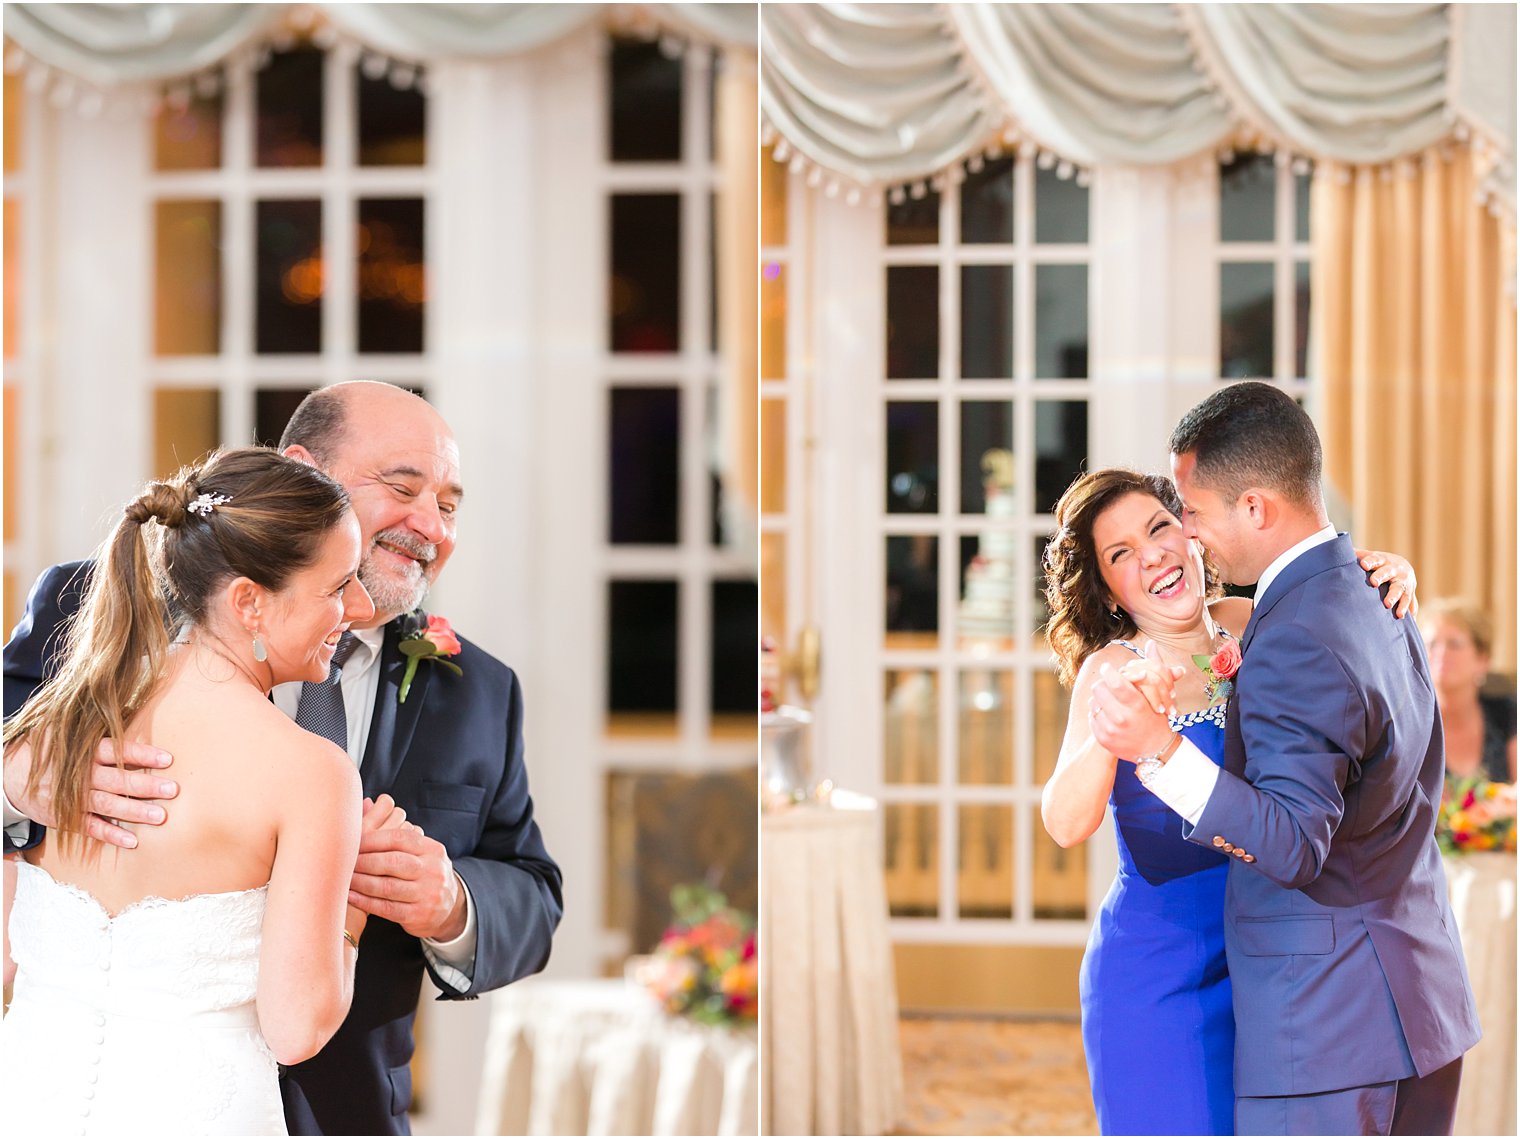 Wedding reception parent dances